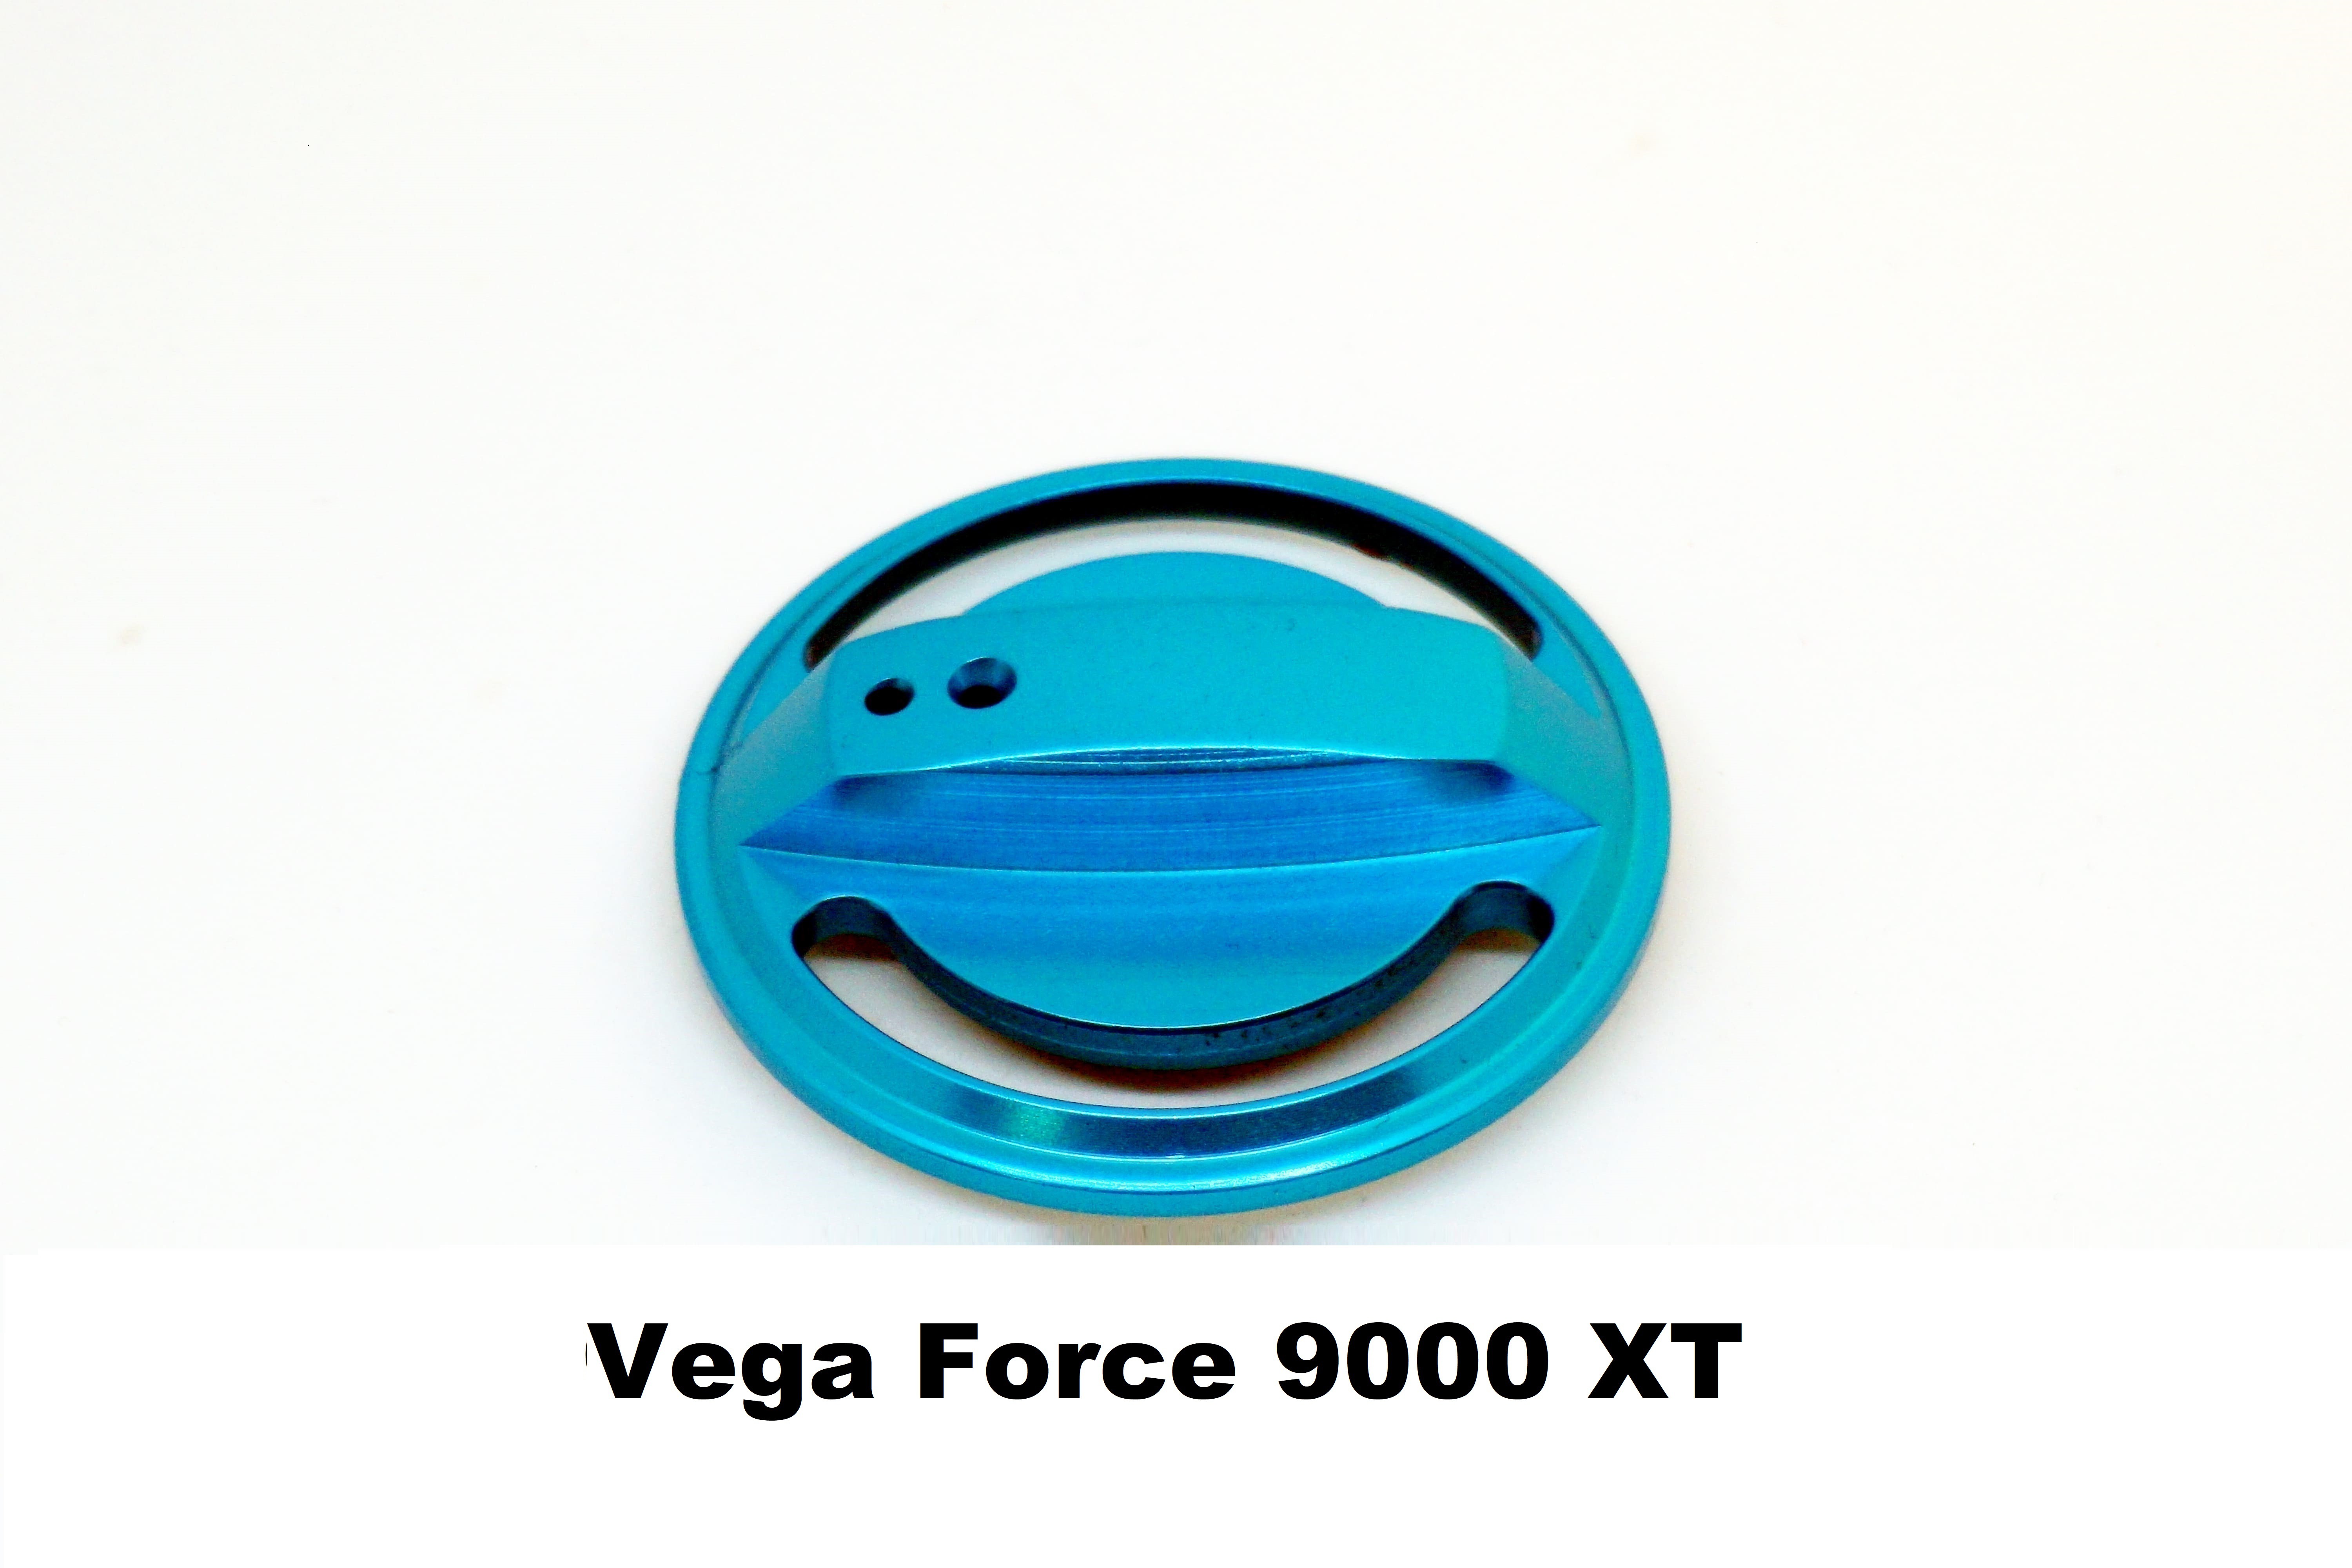 Bouchon de Fren Vega Force 9000 XT